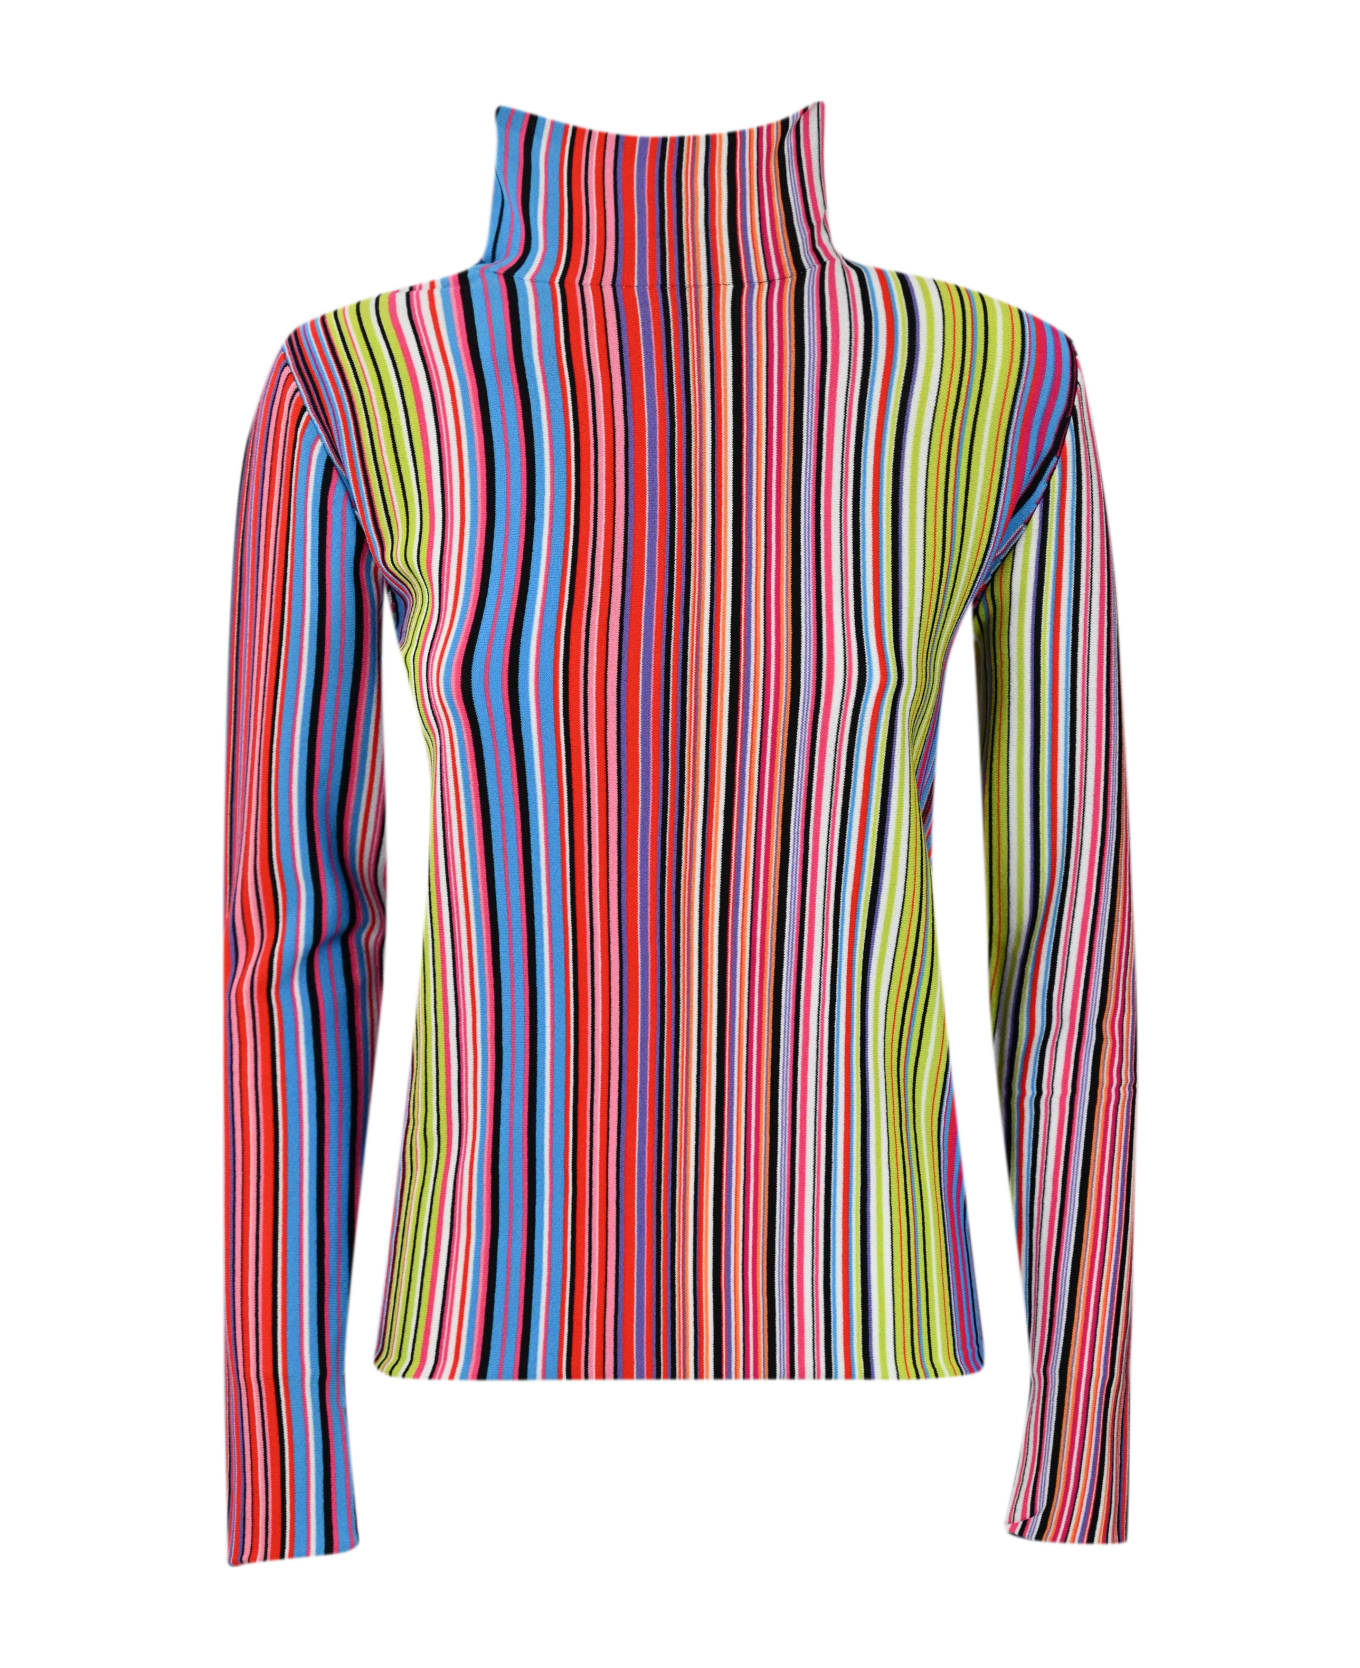 Liviana Conti Striped Viscose Sweater - Riga multicolor